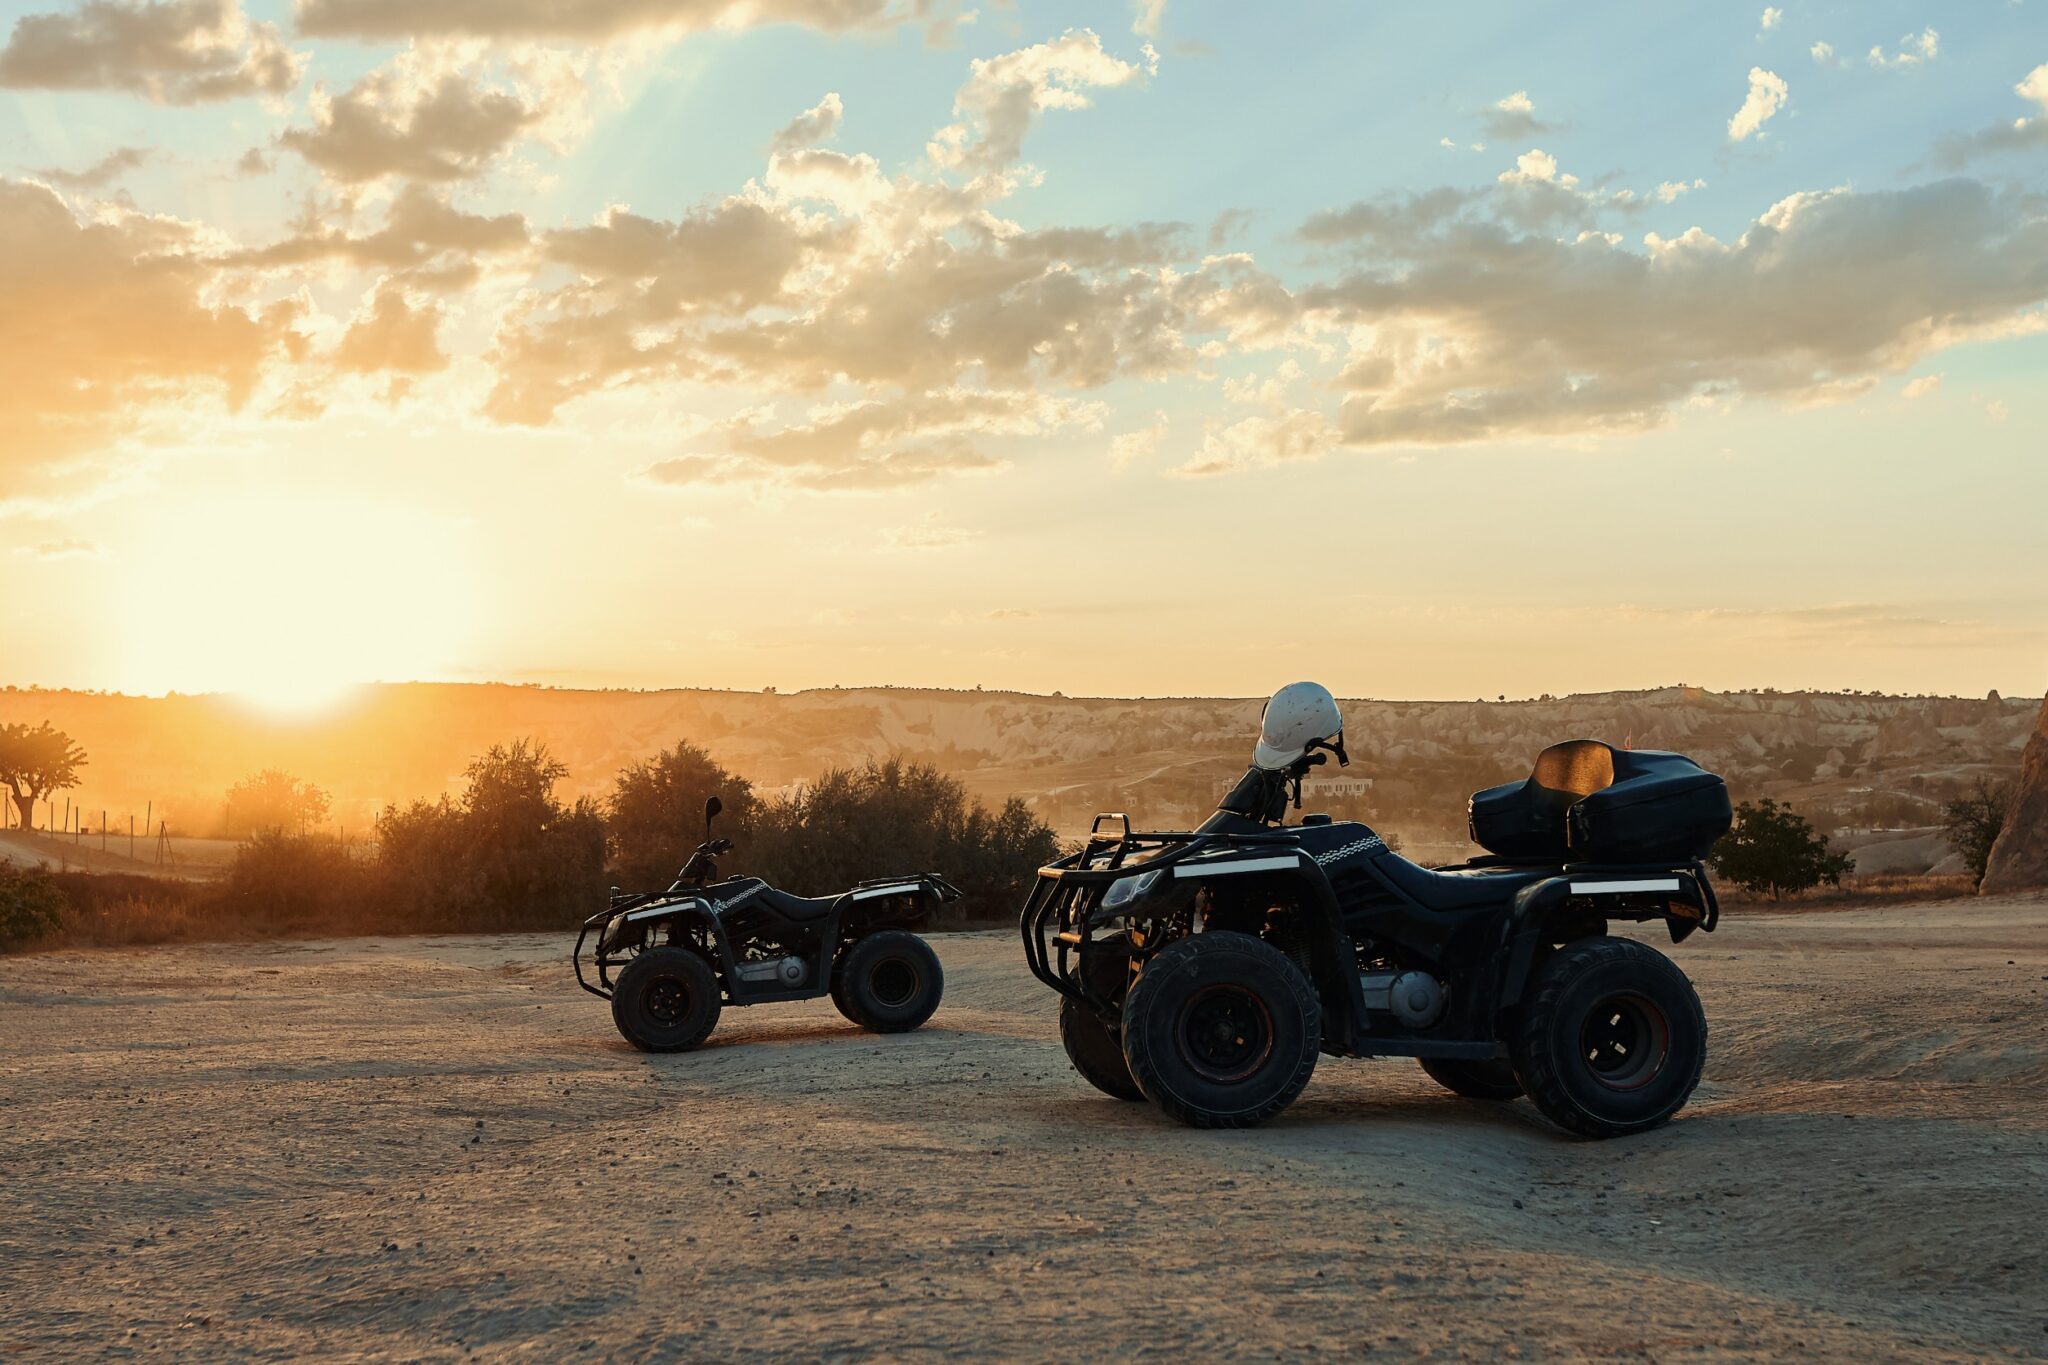 deux quads stationnent sur un terrain, avec en fond un coucher de soleil